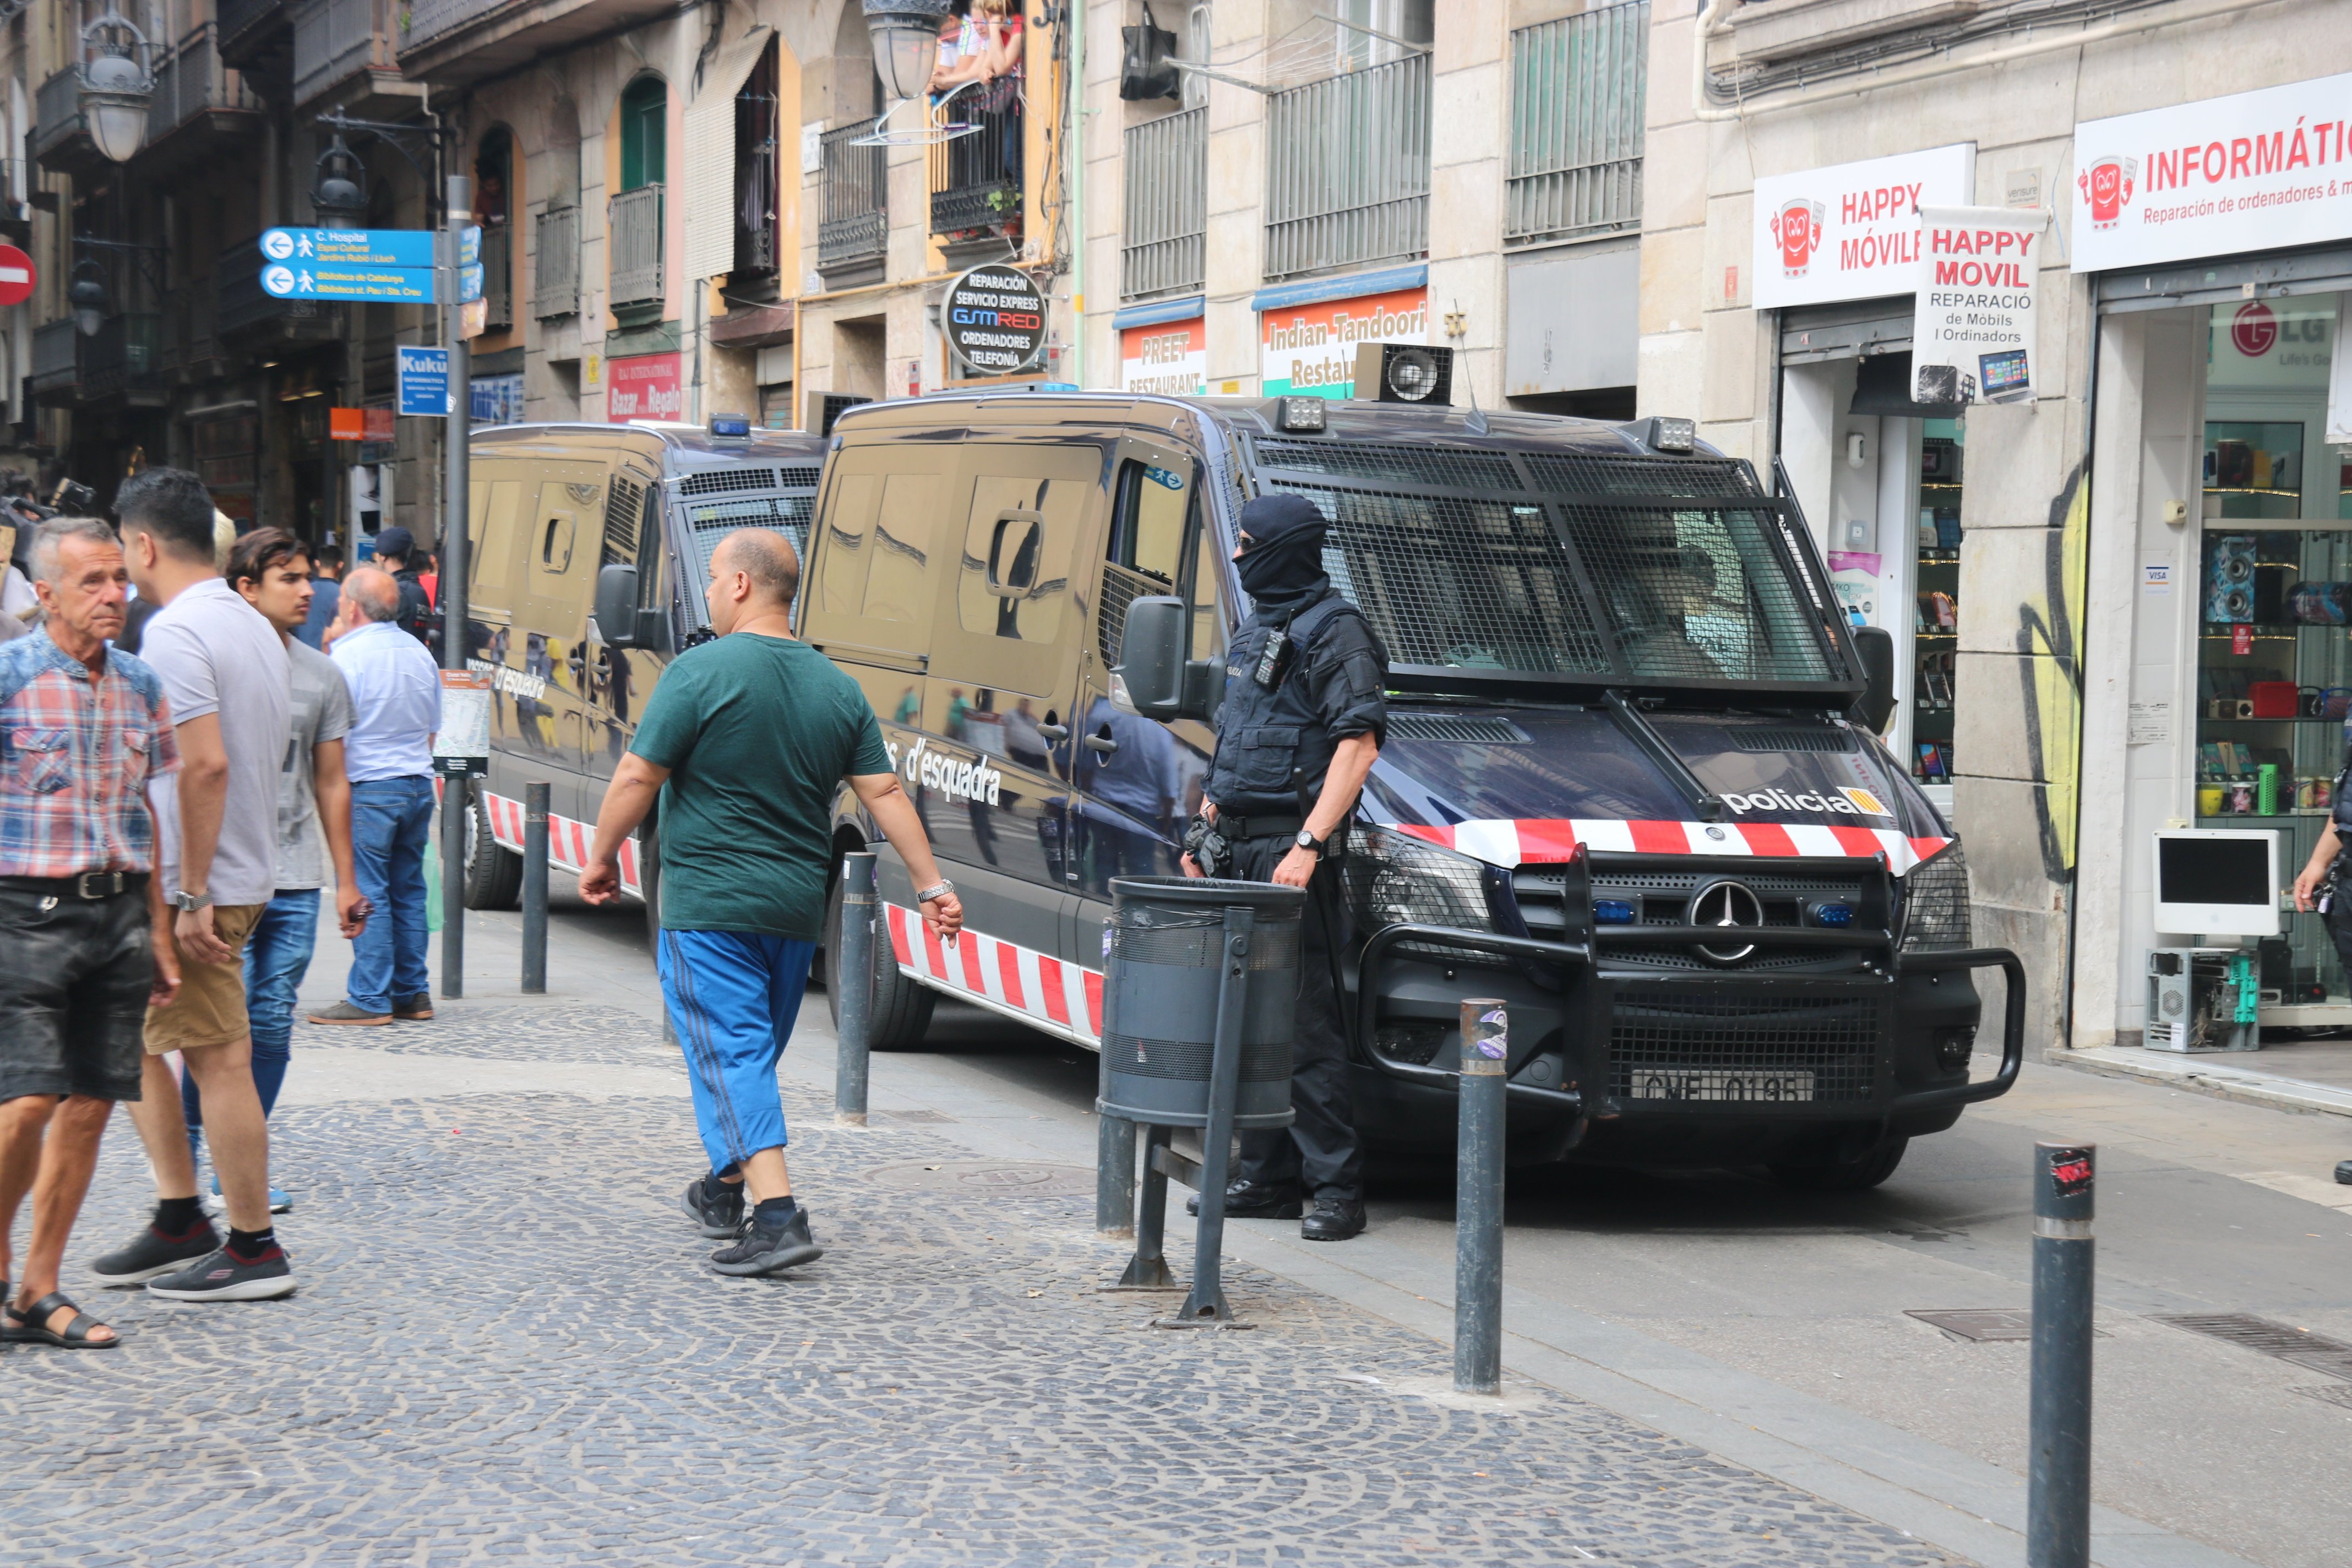 La jutgessa degana de Barcelona veu "indispensable" reformar la llei sobre els furts